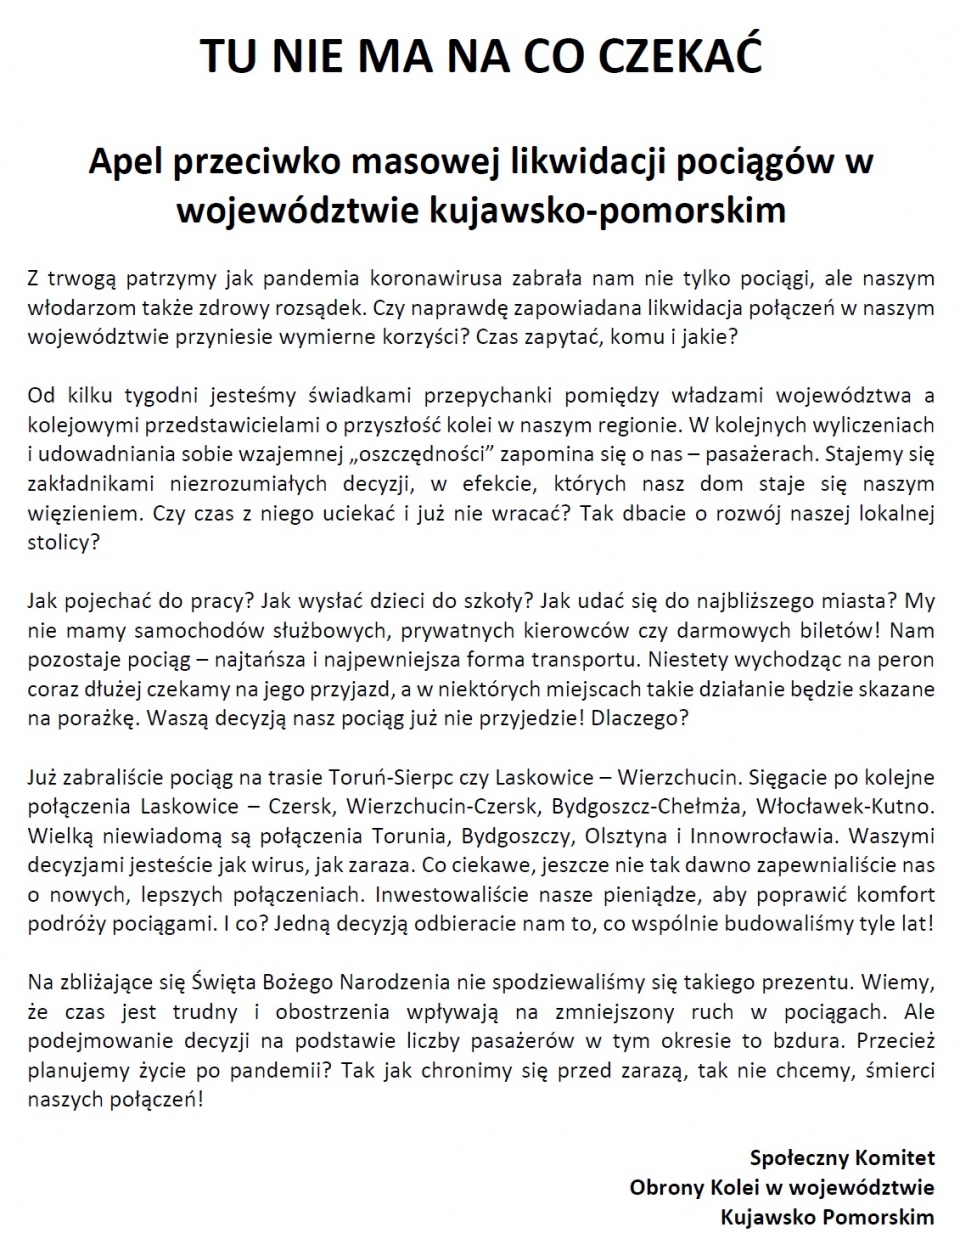 Apel "Przeciwko masowej Likwidacji Pociągów w Województwie Kujawsko-Pomorskim" wystosował Społeczny Komitet Obrony Kolei.